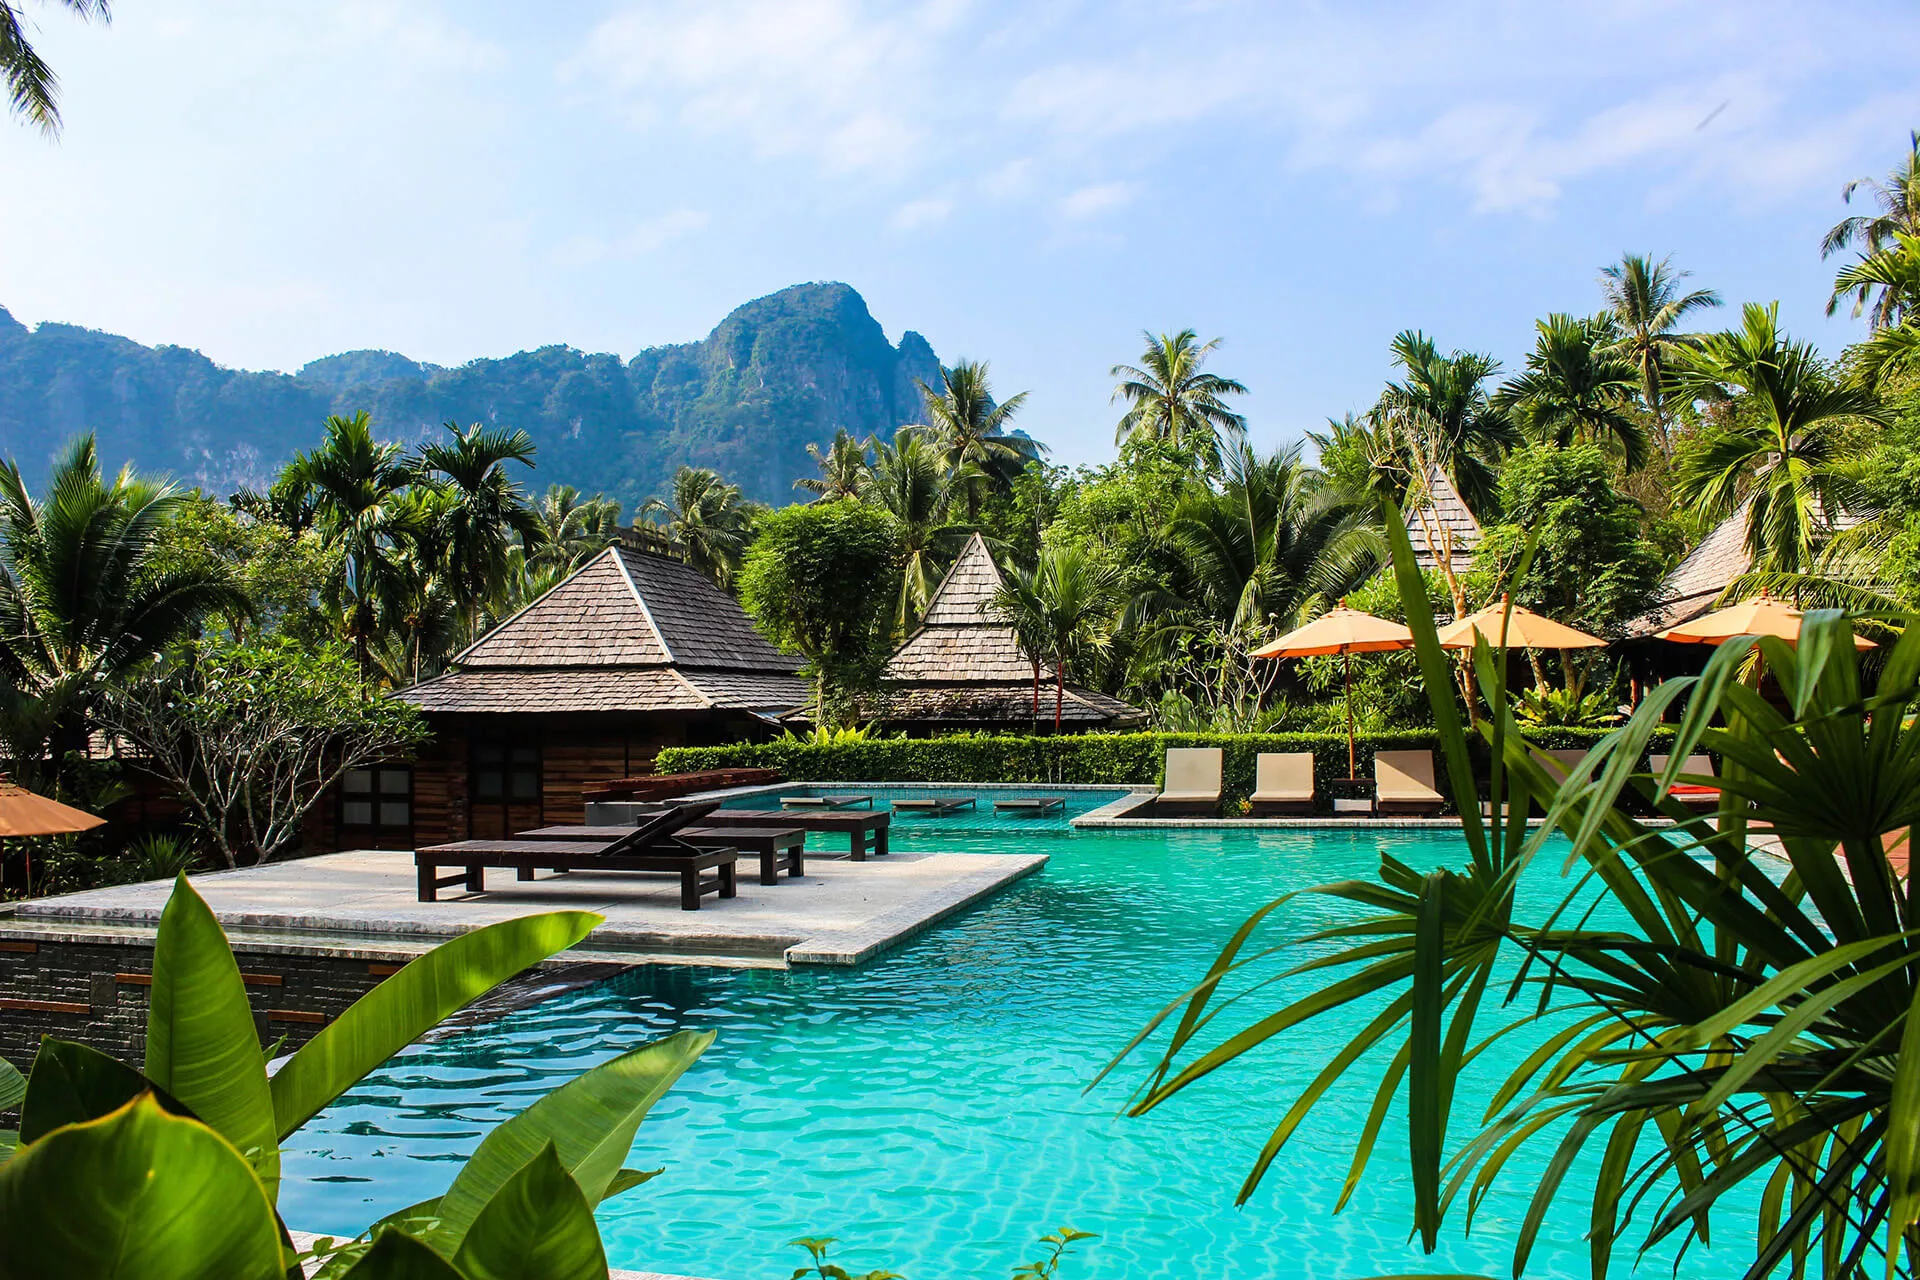 Pauschalreise nach Thailand, Urlaub im Hotel mit Pool und Palmen, Flug & Hotel mit AurumTours